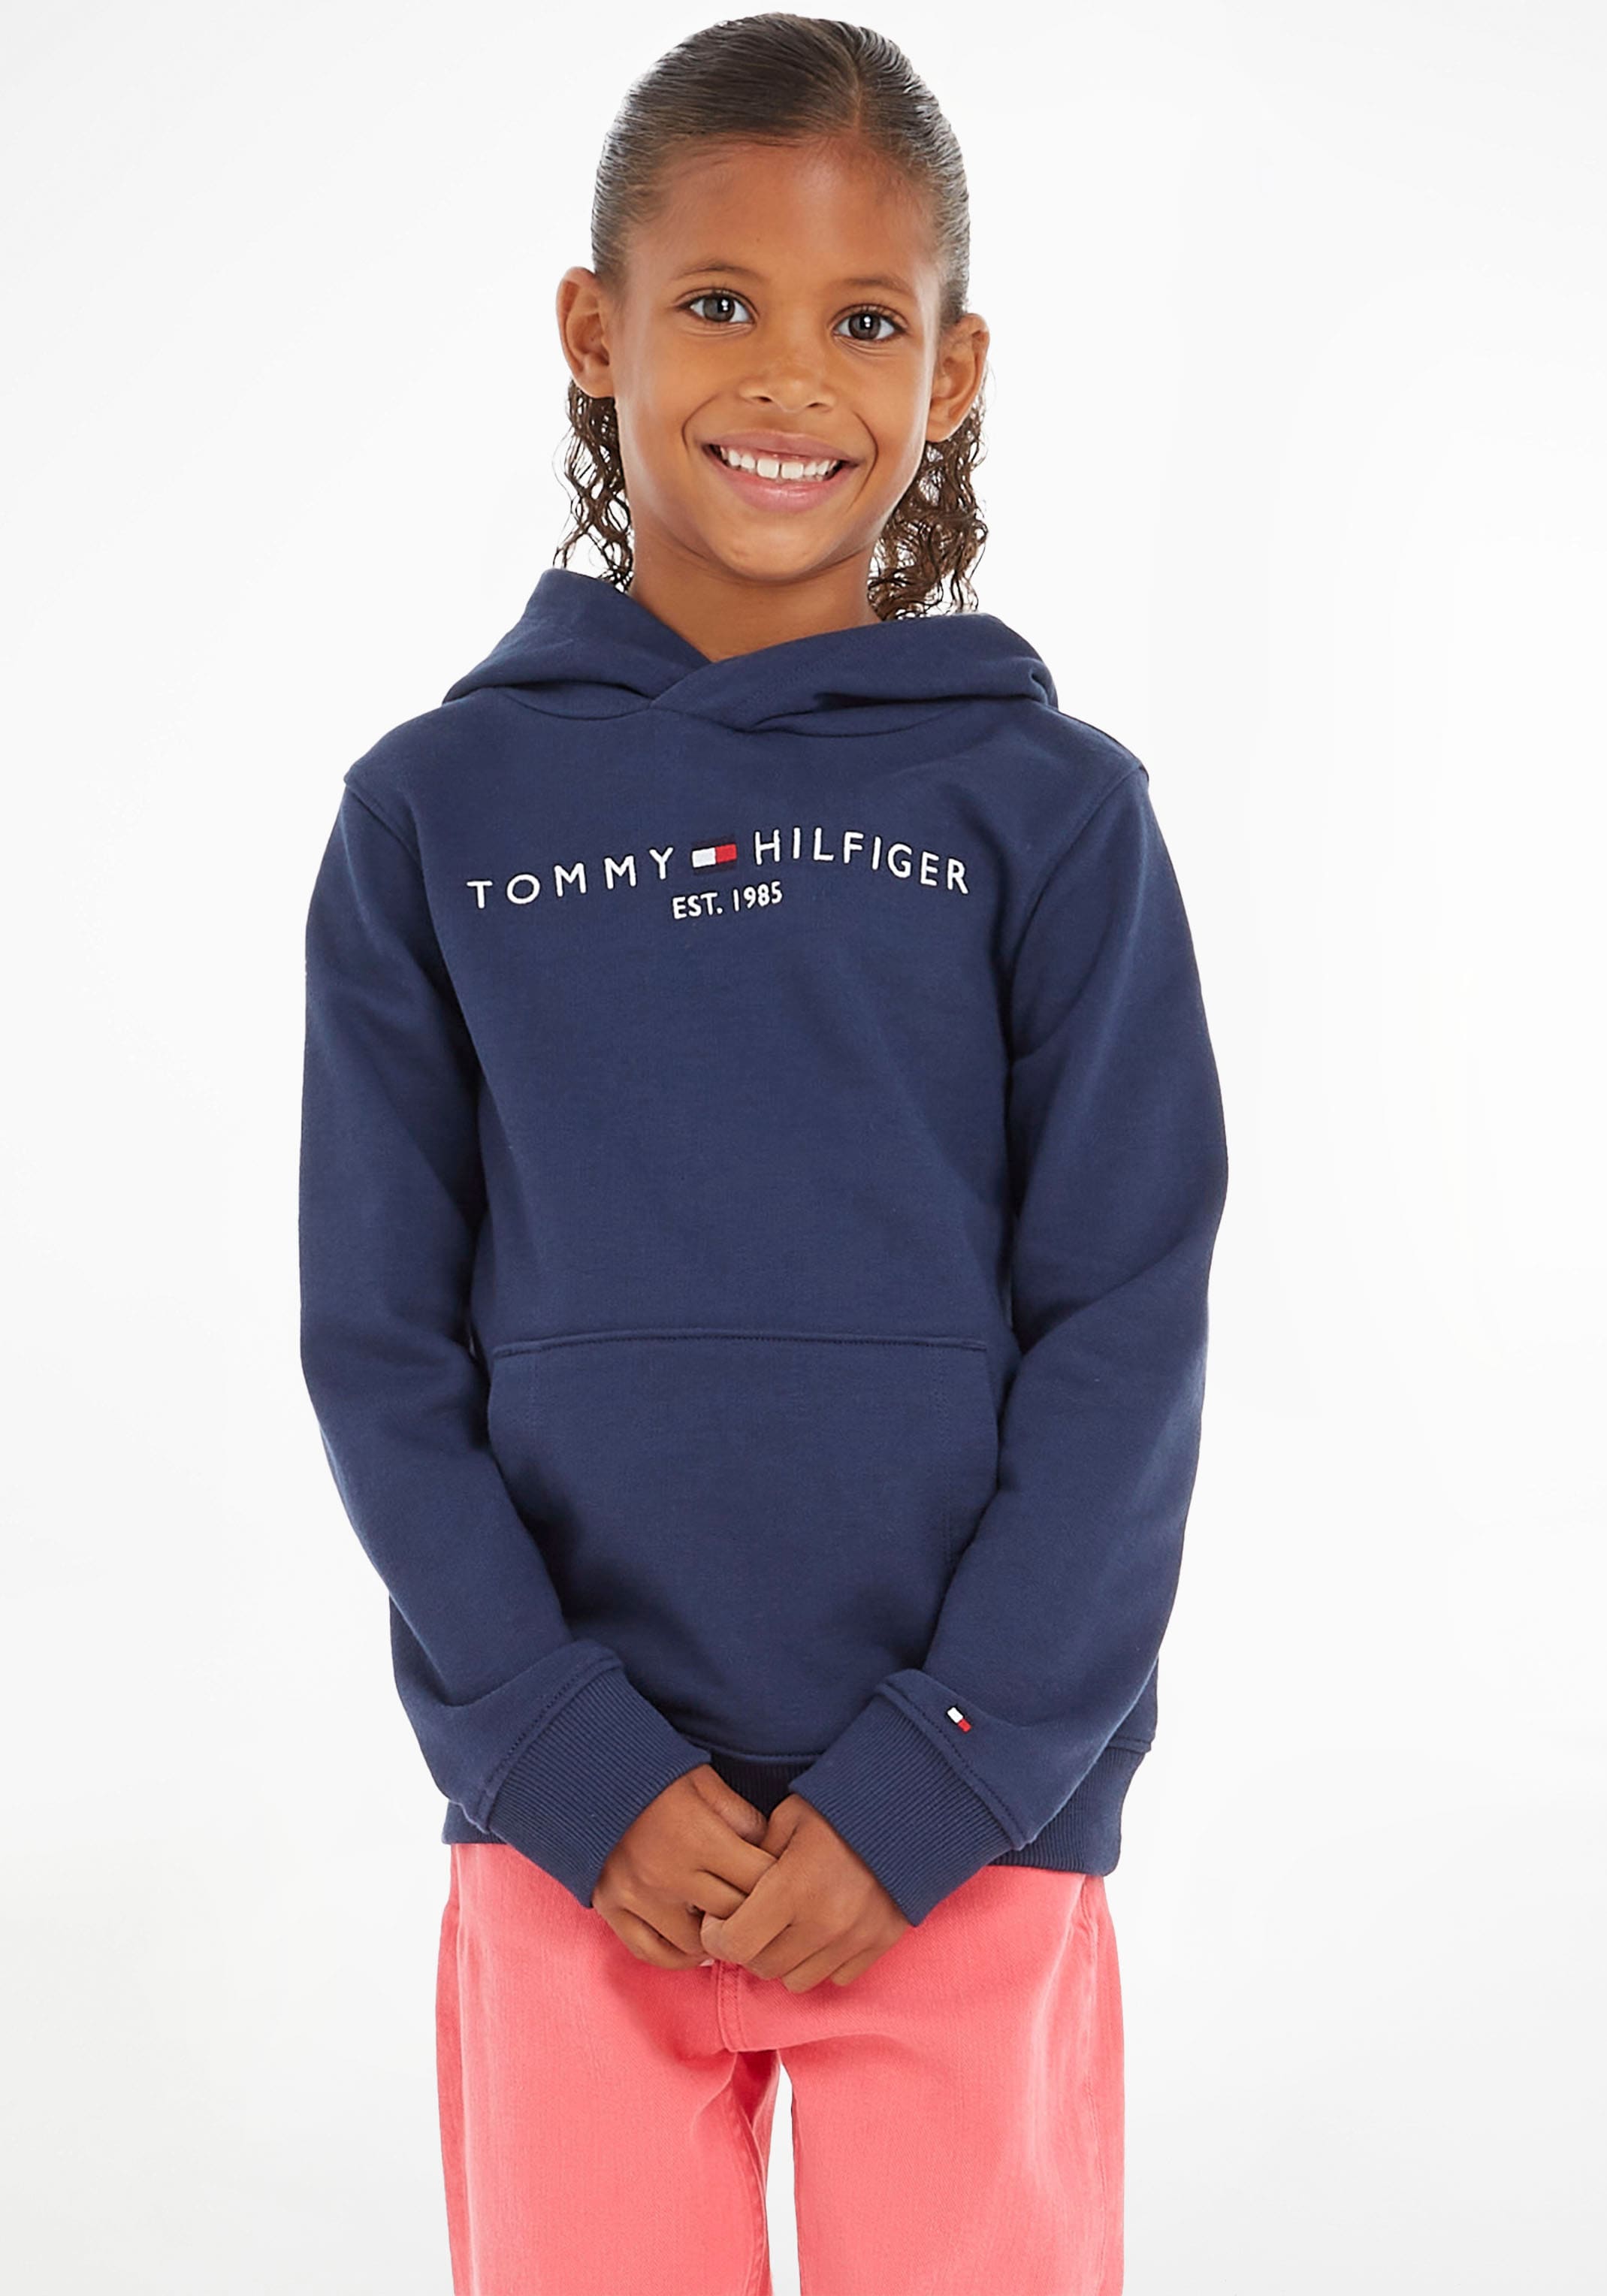 Tommy Hilfiger Hilfiger im MONOTYPE kaufen Logo-Schriftzug mit Sweatshirt Karodessin markantem »BOLD SWEATSHIRT«